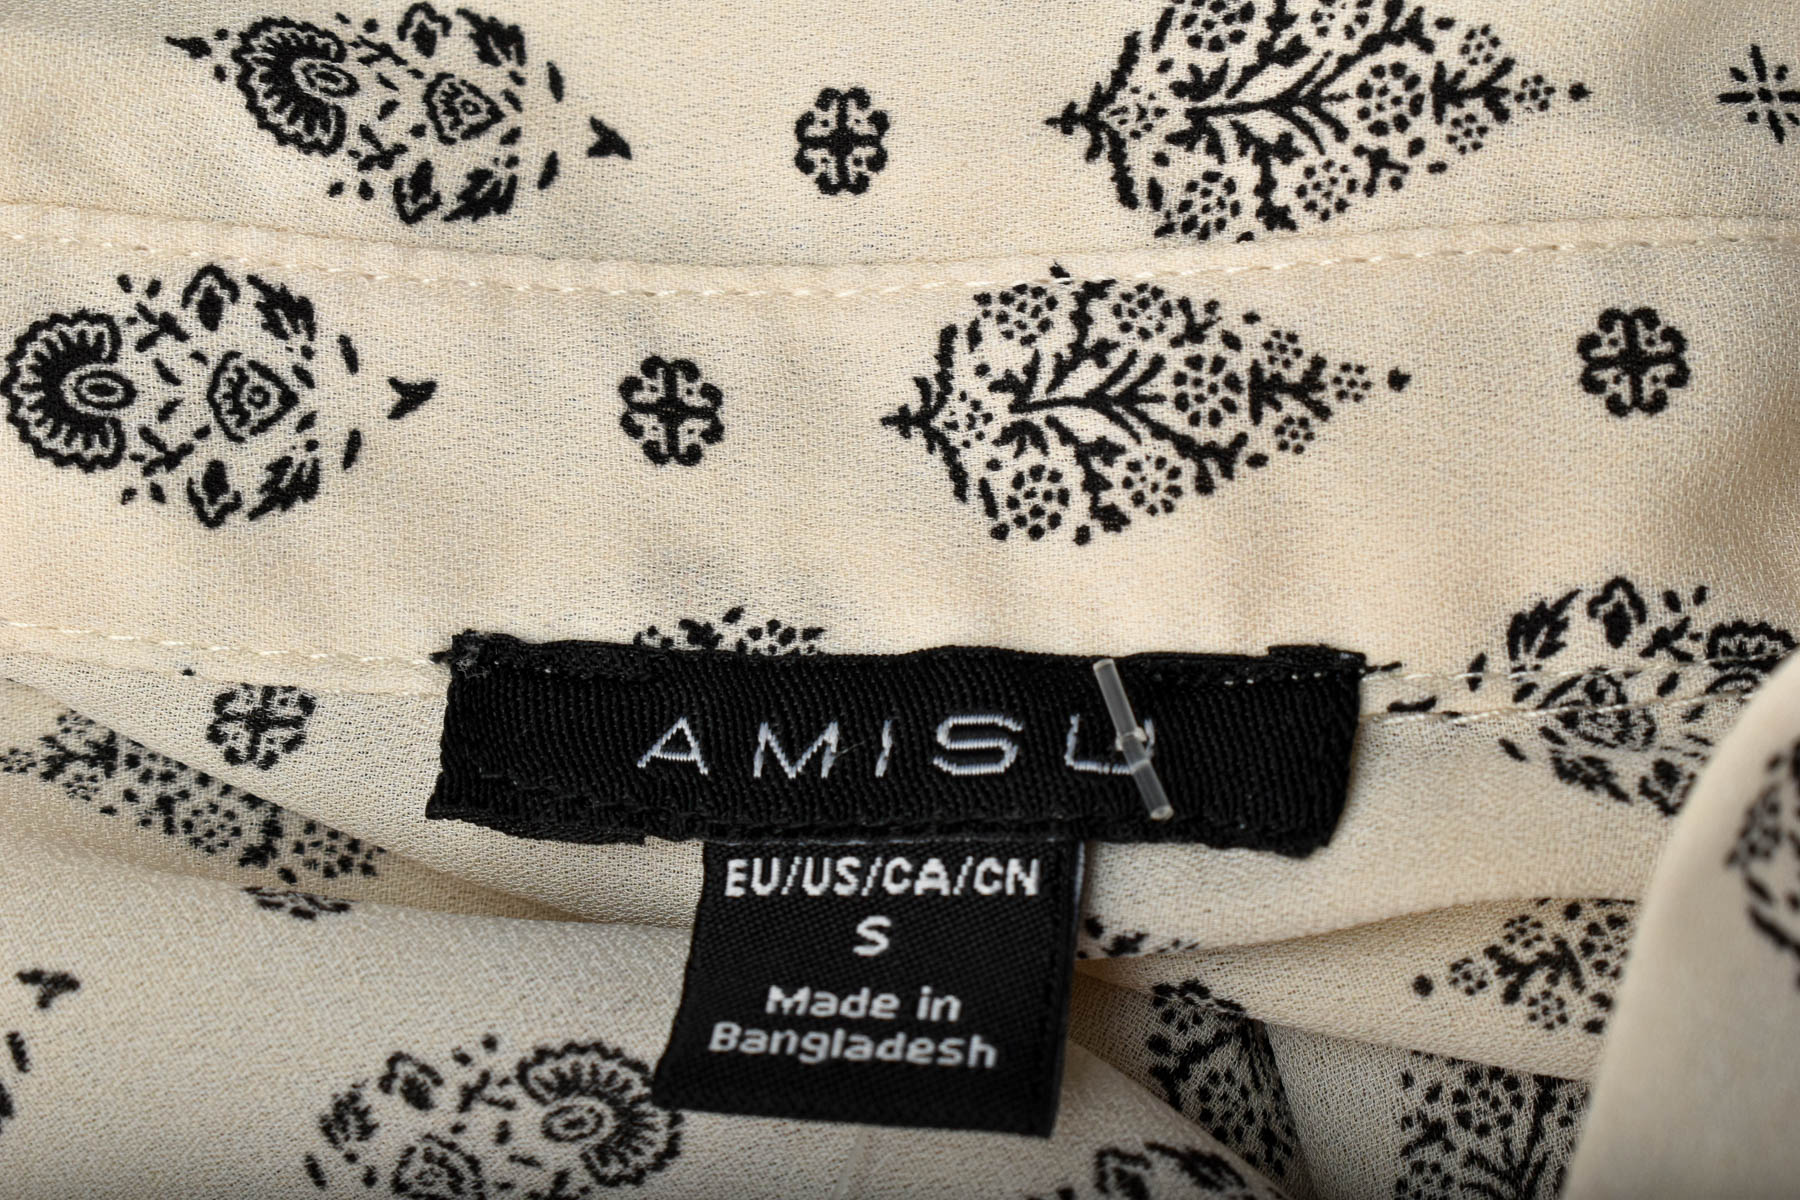 Γυναικείо πουκάμισο - AMISU - 2